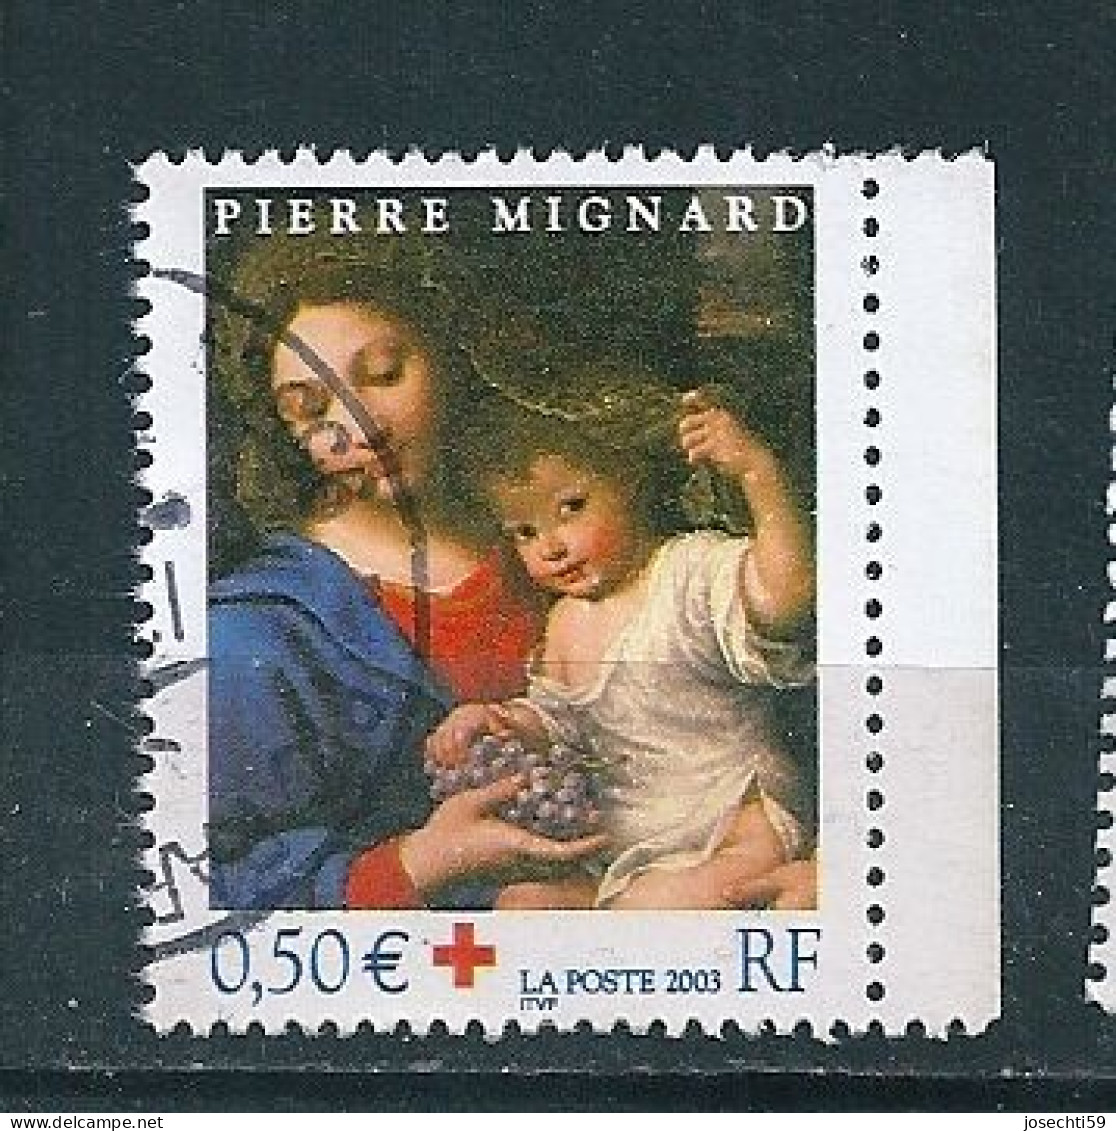 N°  3620 Vierge à La Grappe Timbre France Croix Rouge 2003 Oblitéré - Usati